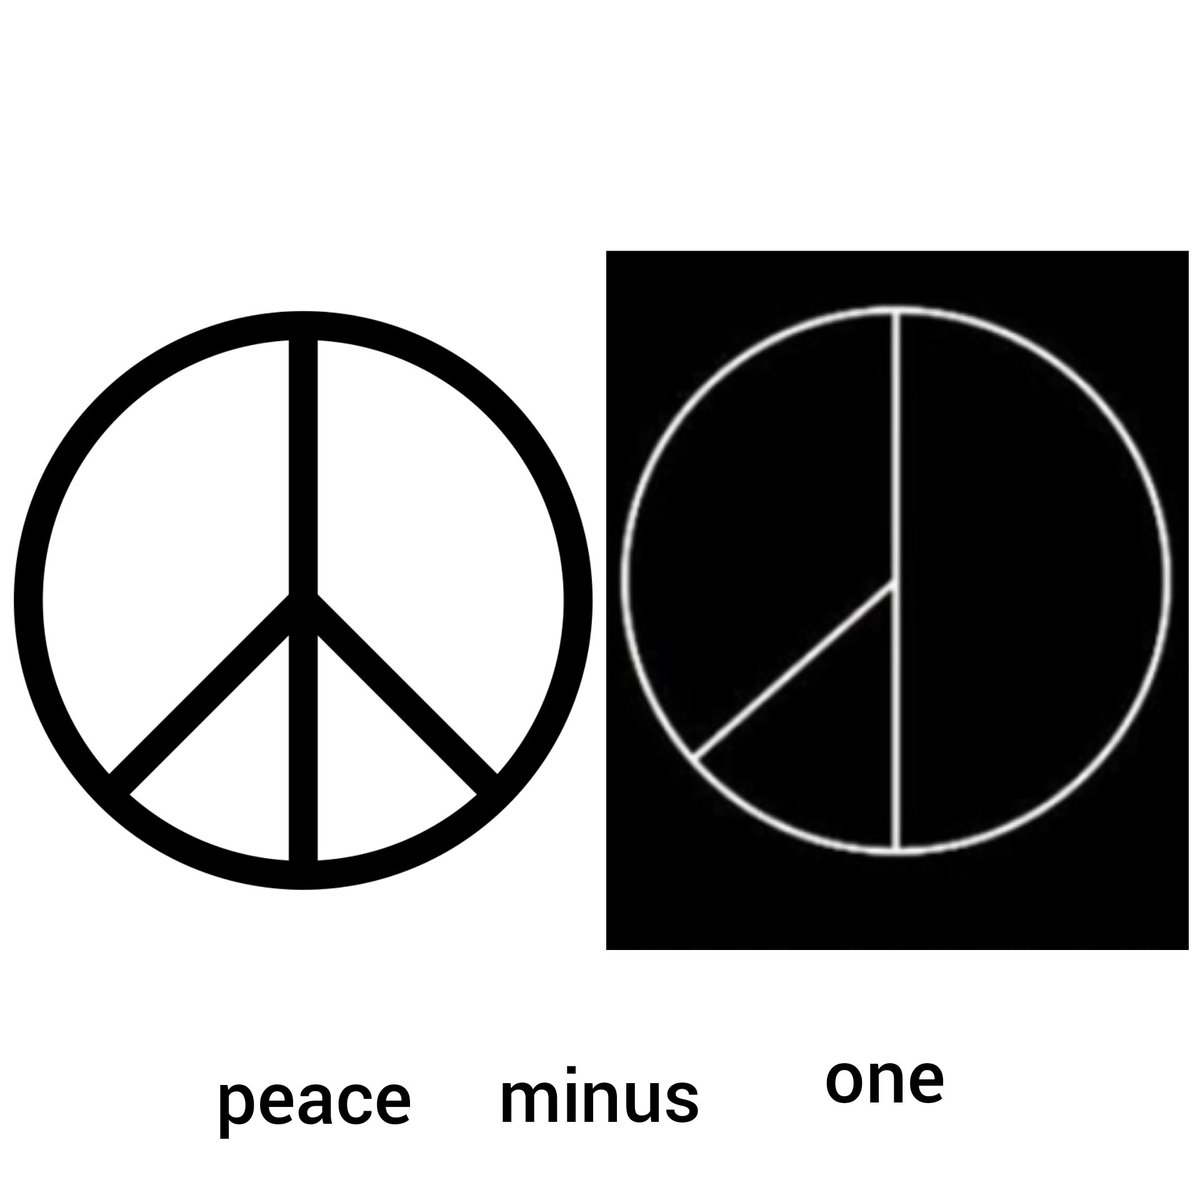 simbol peace dua kan garis bawahnya itu. nah di logonya kok ilang satu. jadinya, peace kurang satu = peace minus one. kenapa kok yang ilang kanan sih bukan kiri?